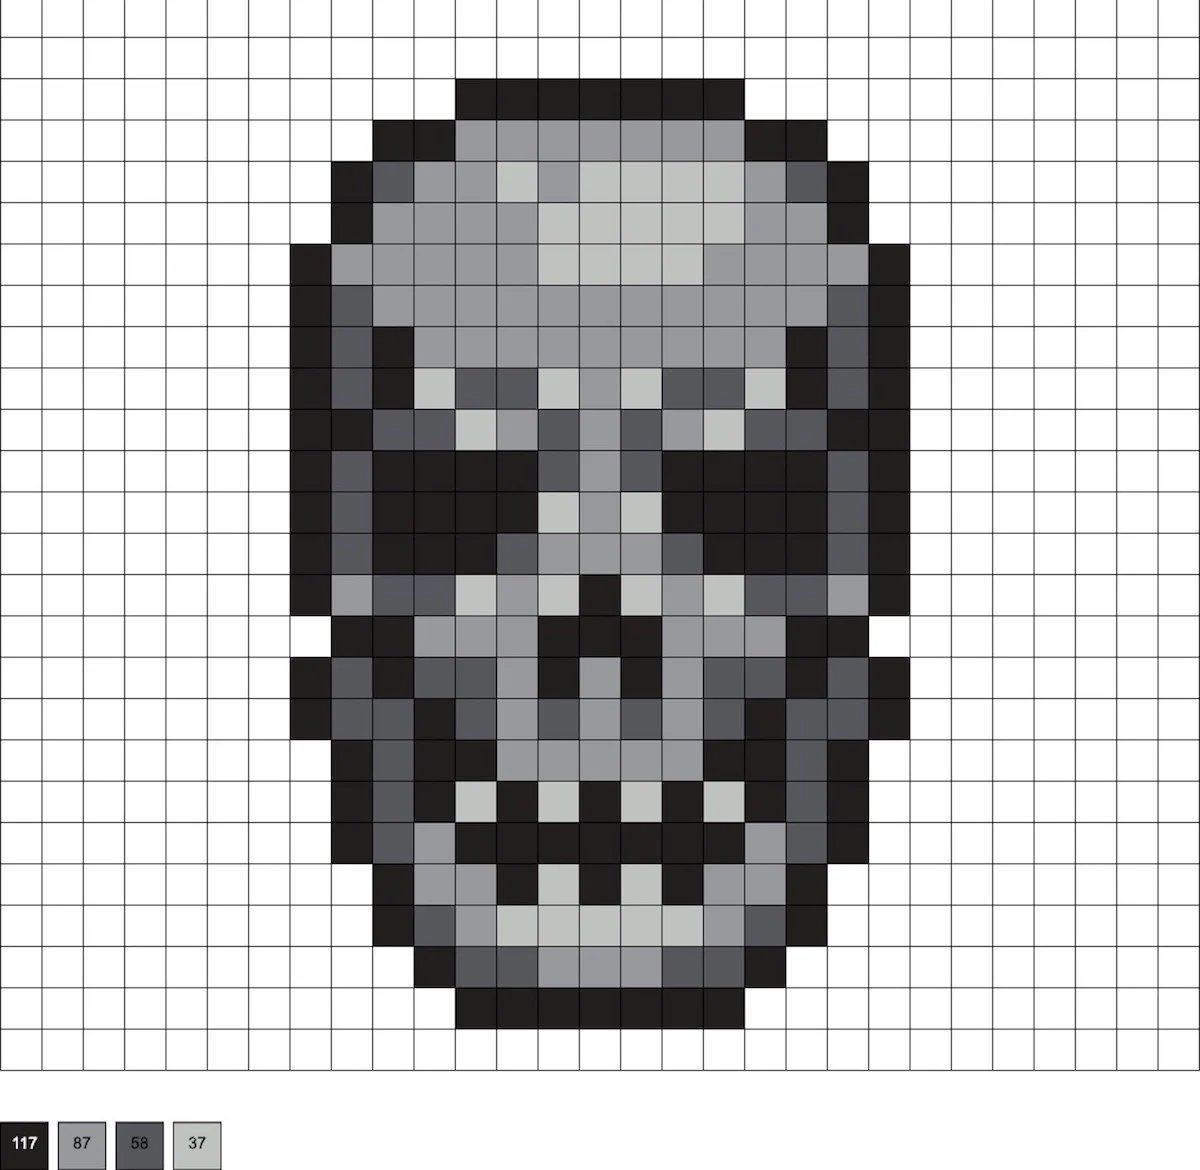 25, Black & White Skull Beads